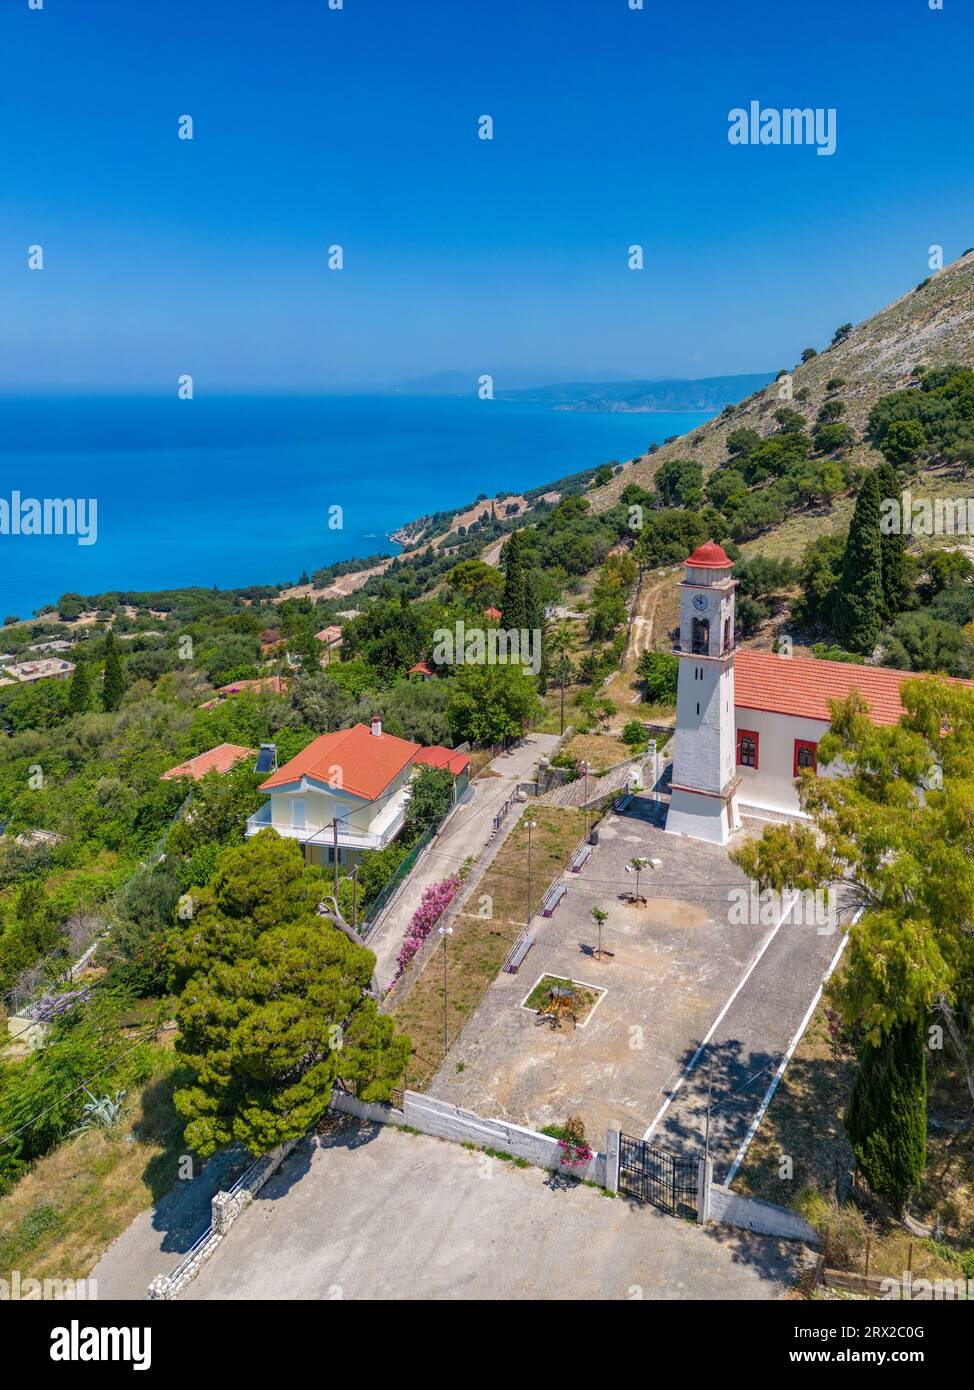 Vue aérienne de l'église orthodoxe grecque et du littoral près de Zola, Céphalonie, îles Ioniennes, îles grecques, Grèce, Europe Banque D'Images